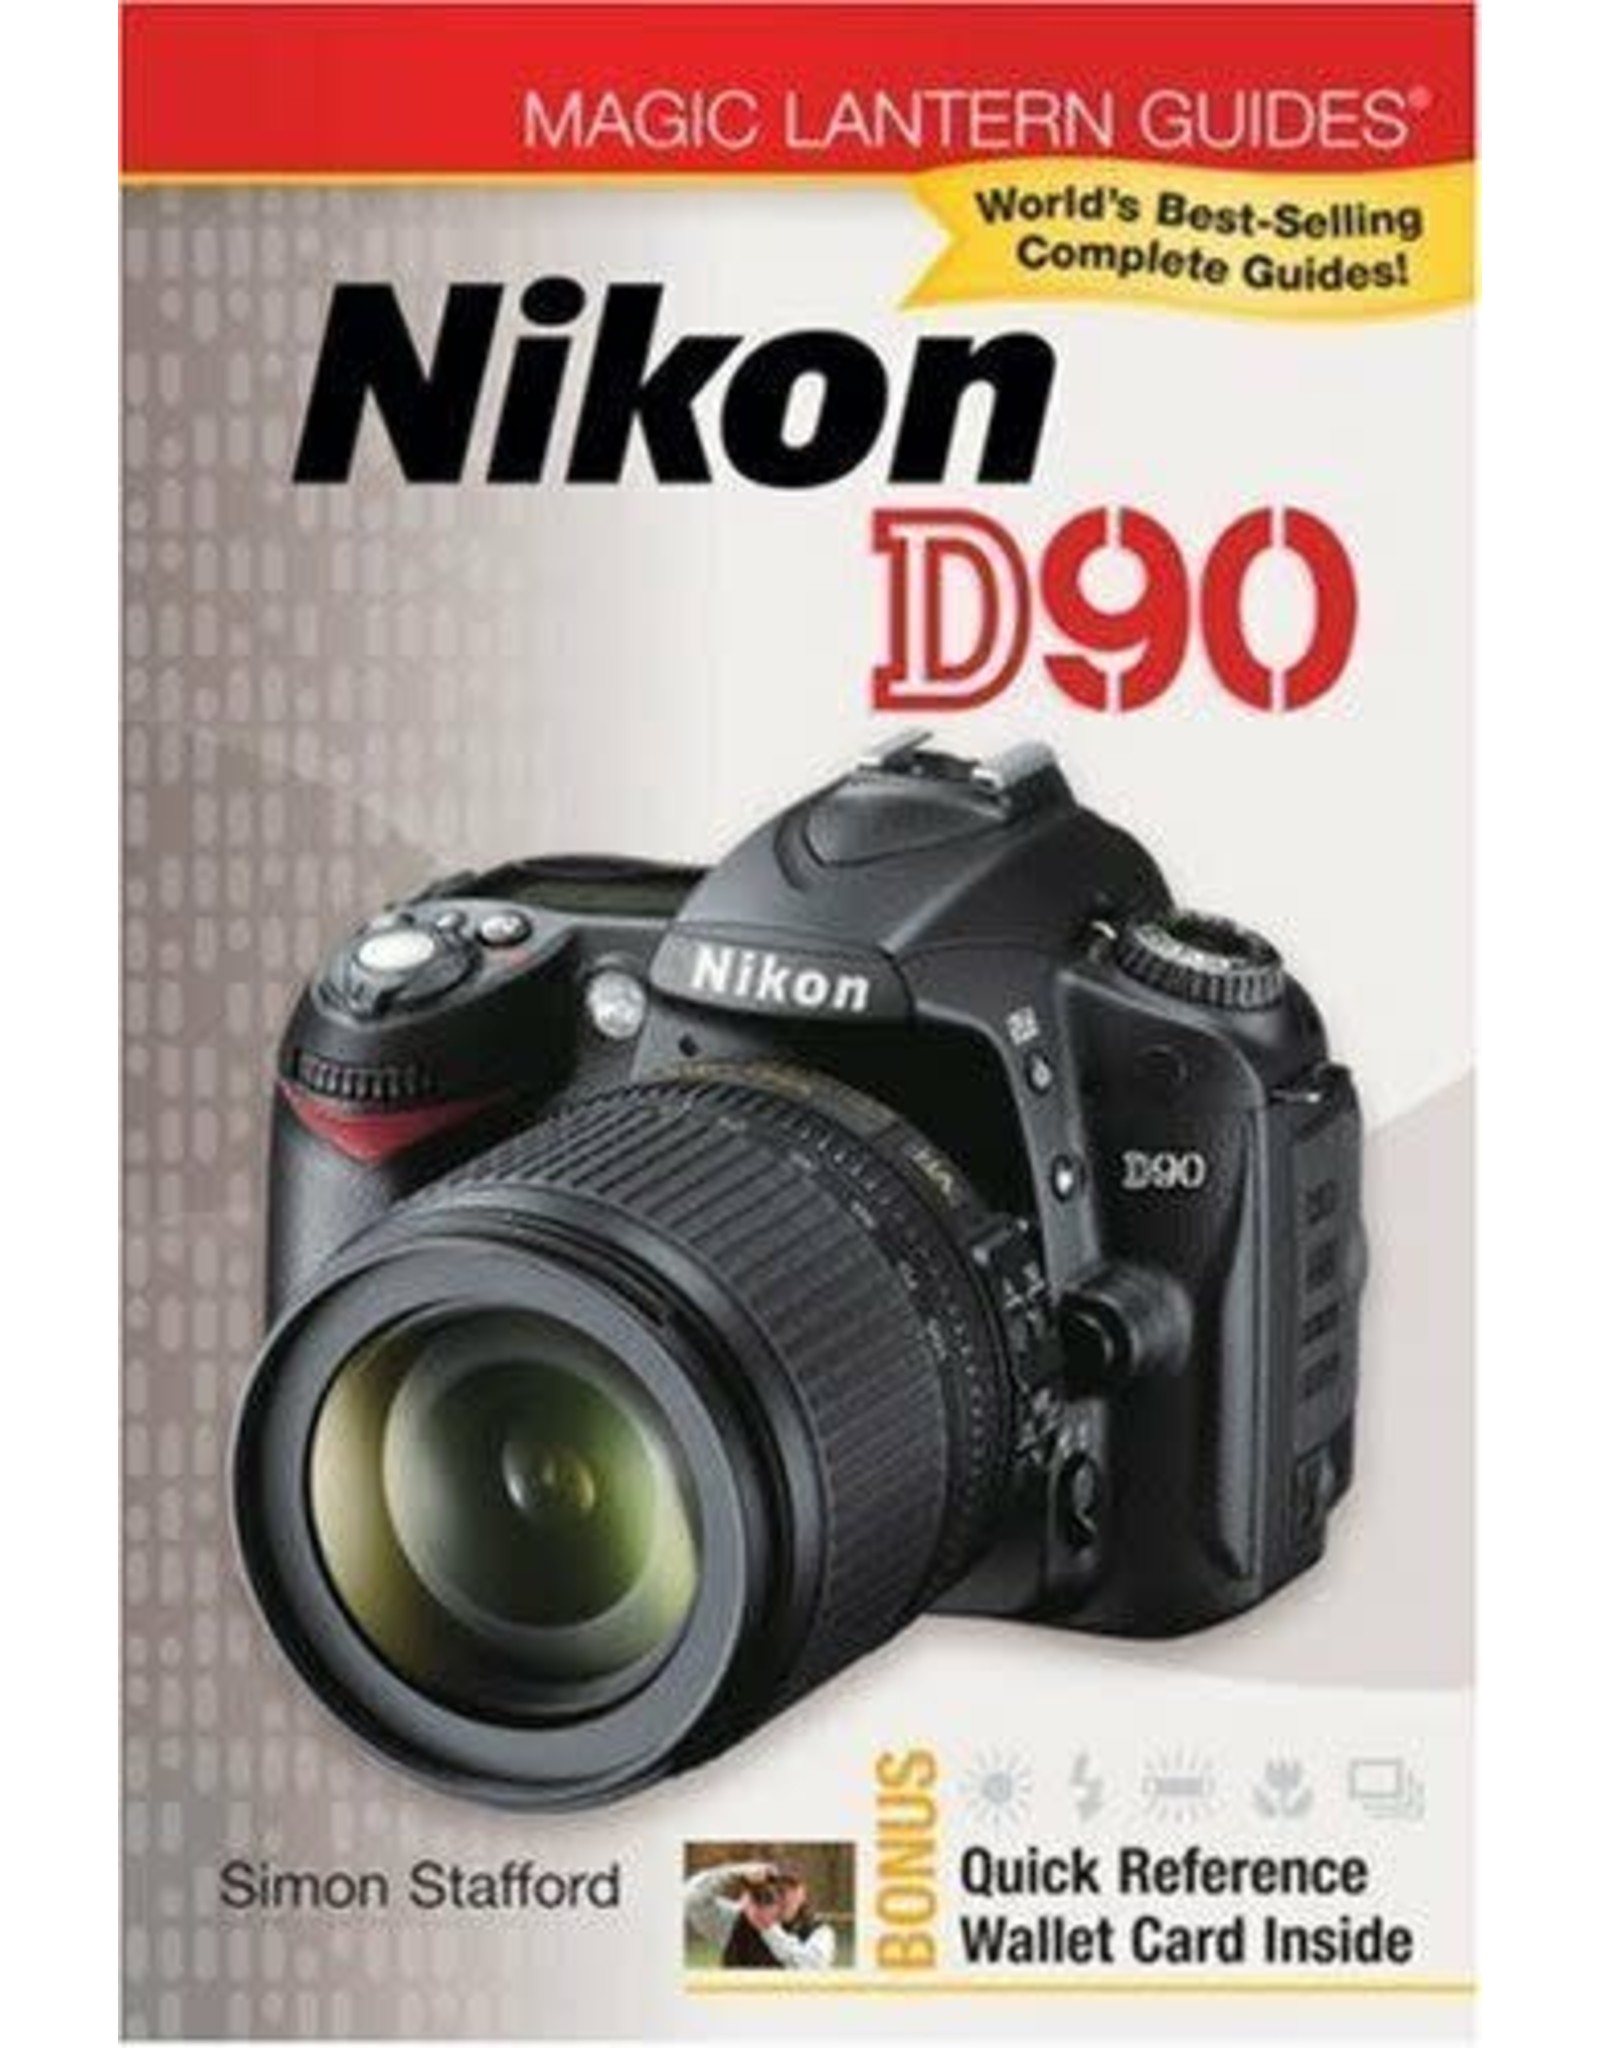 Nikon D90 Magic Lantern Guide